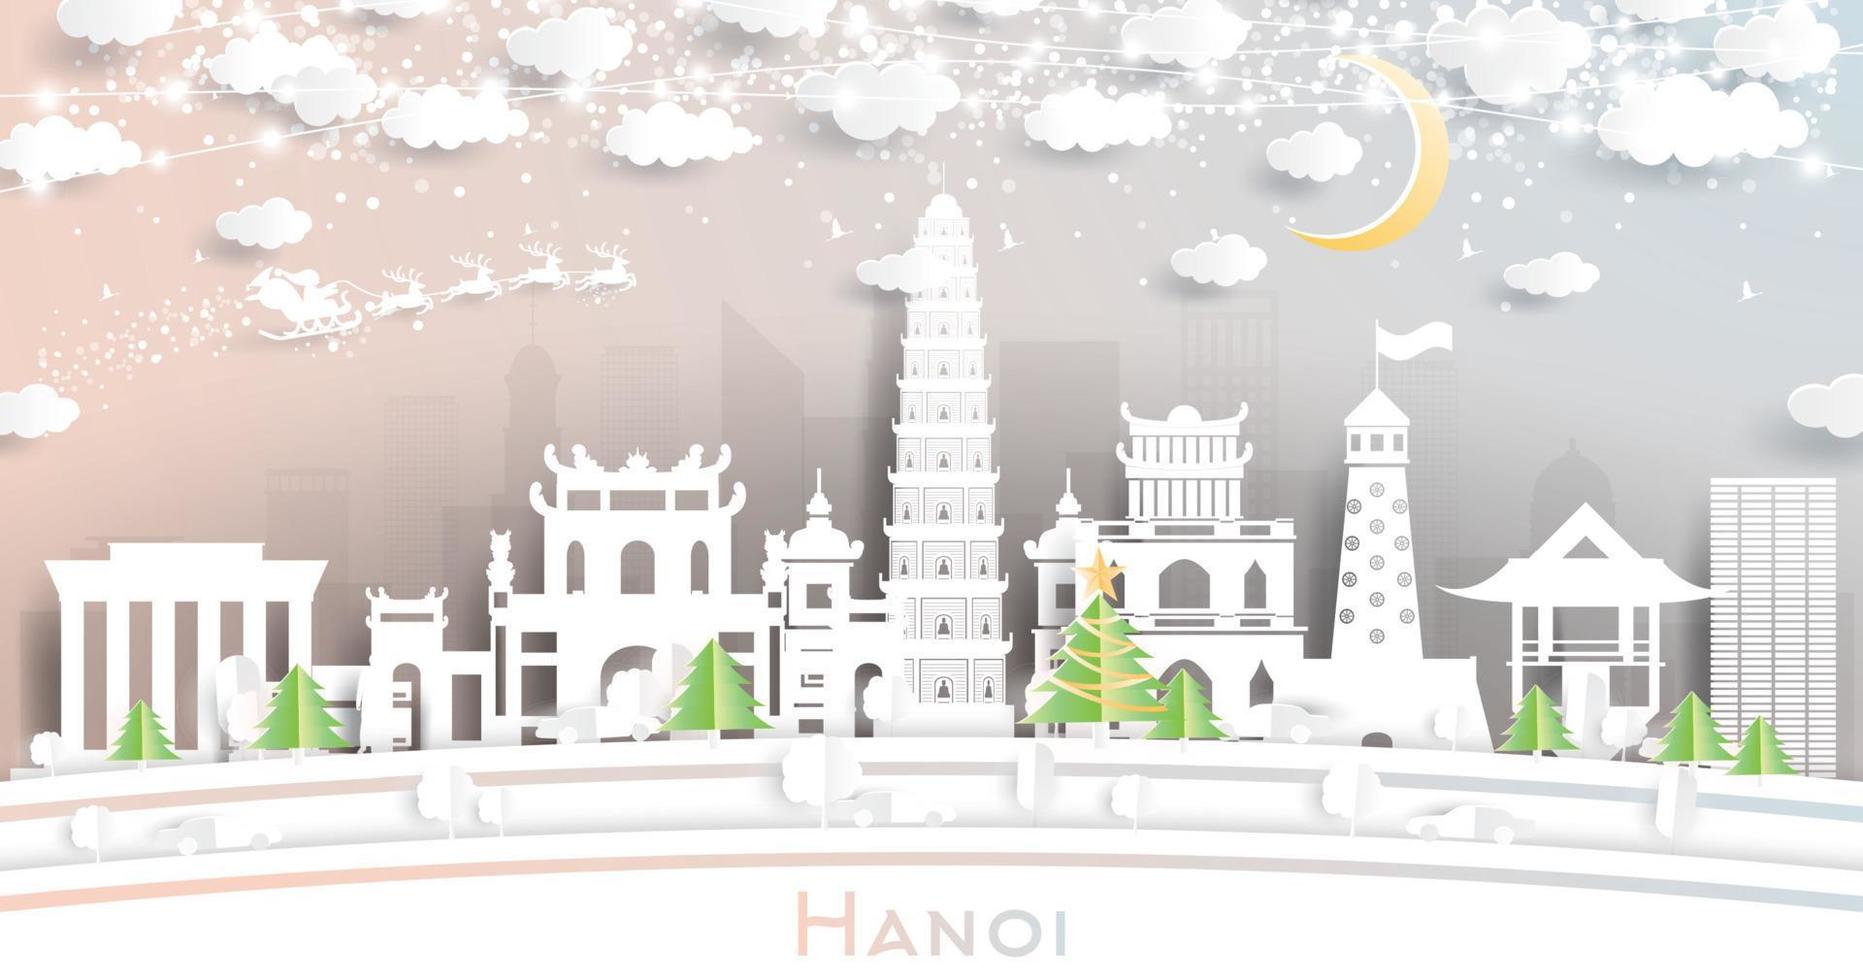 toits de la ville de hanoi vietnam dans un style papier découpé avec des flocons de neige, une lune et une guirlande de néons. vecteur